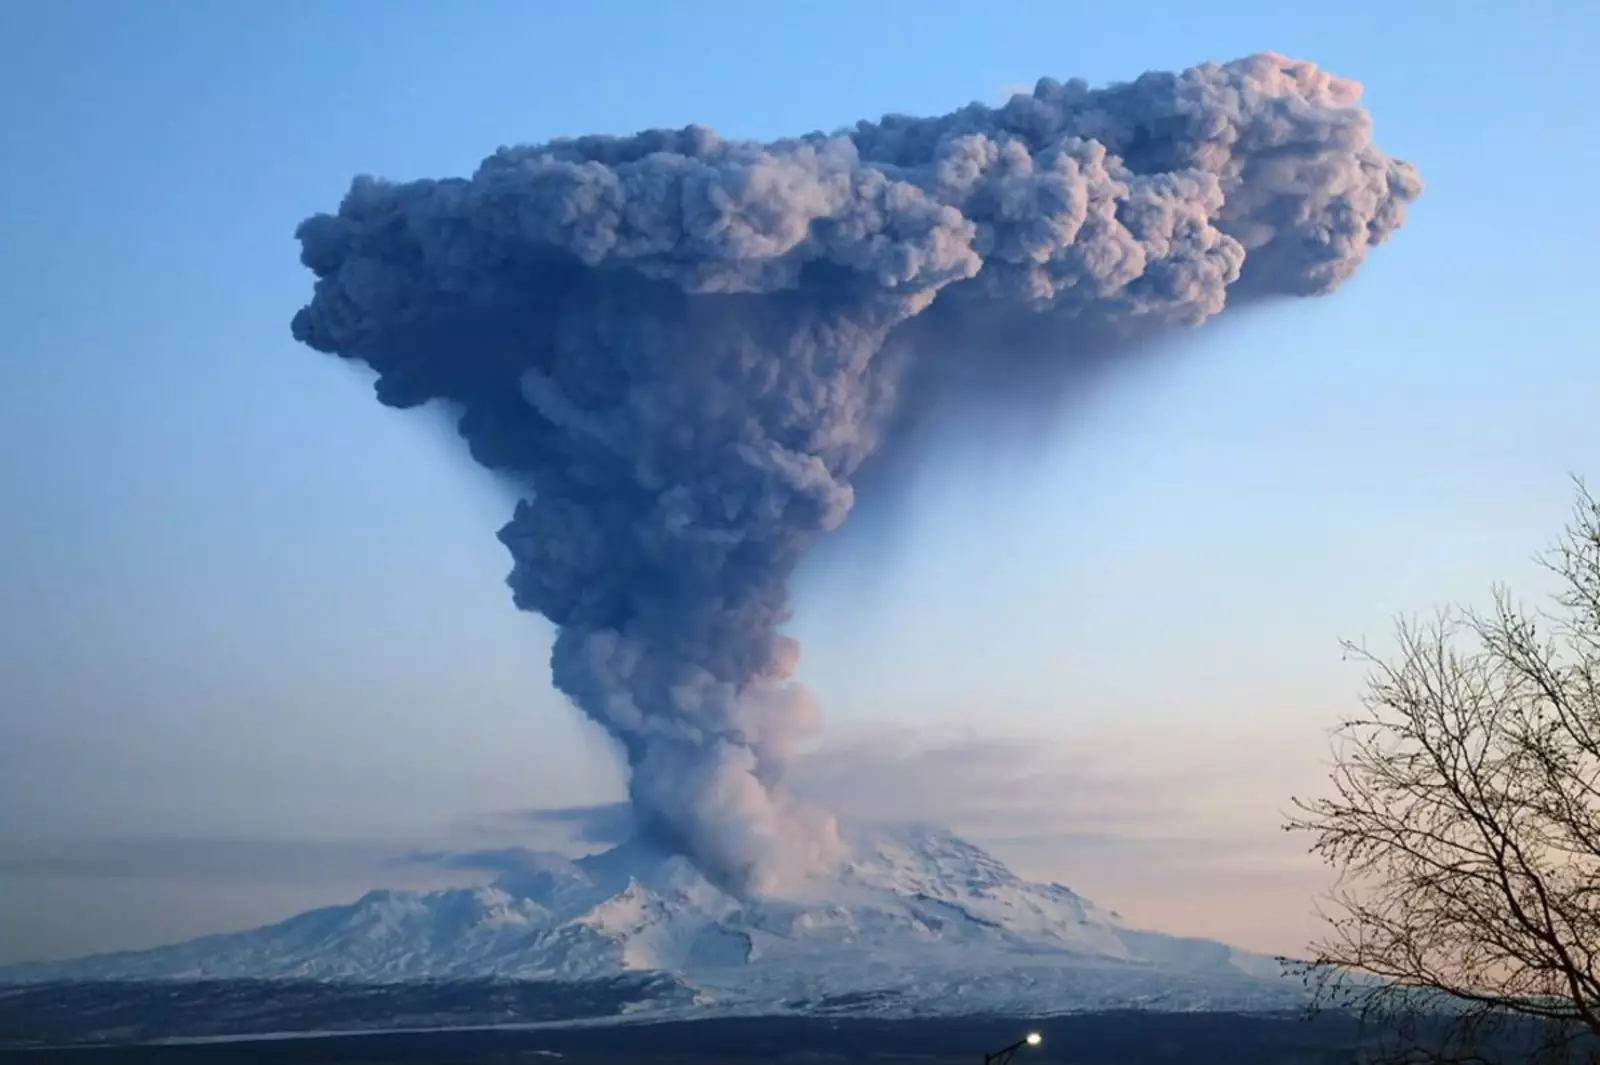 Извержение вулканов и сильные землетрясения происходят. Вулкан Шивелуч на Камчатке. Извержение вулкана Шивелуч. Извержение Шивелуча на Камчатке. Вулкан Шивелуч 1964.